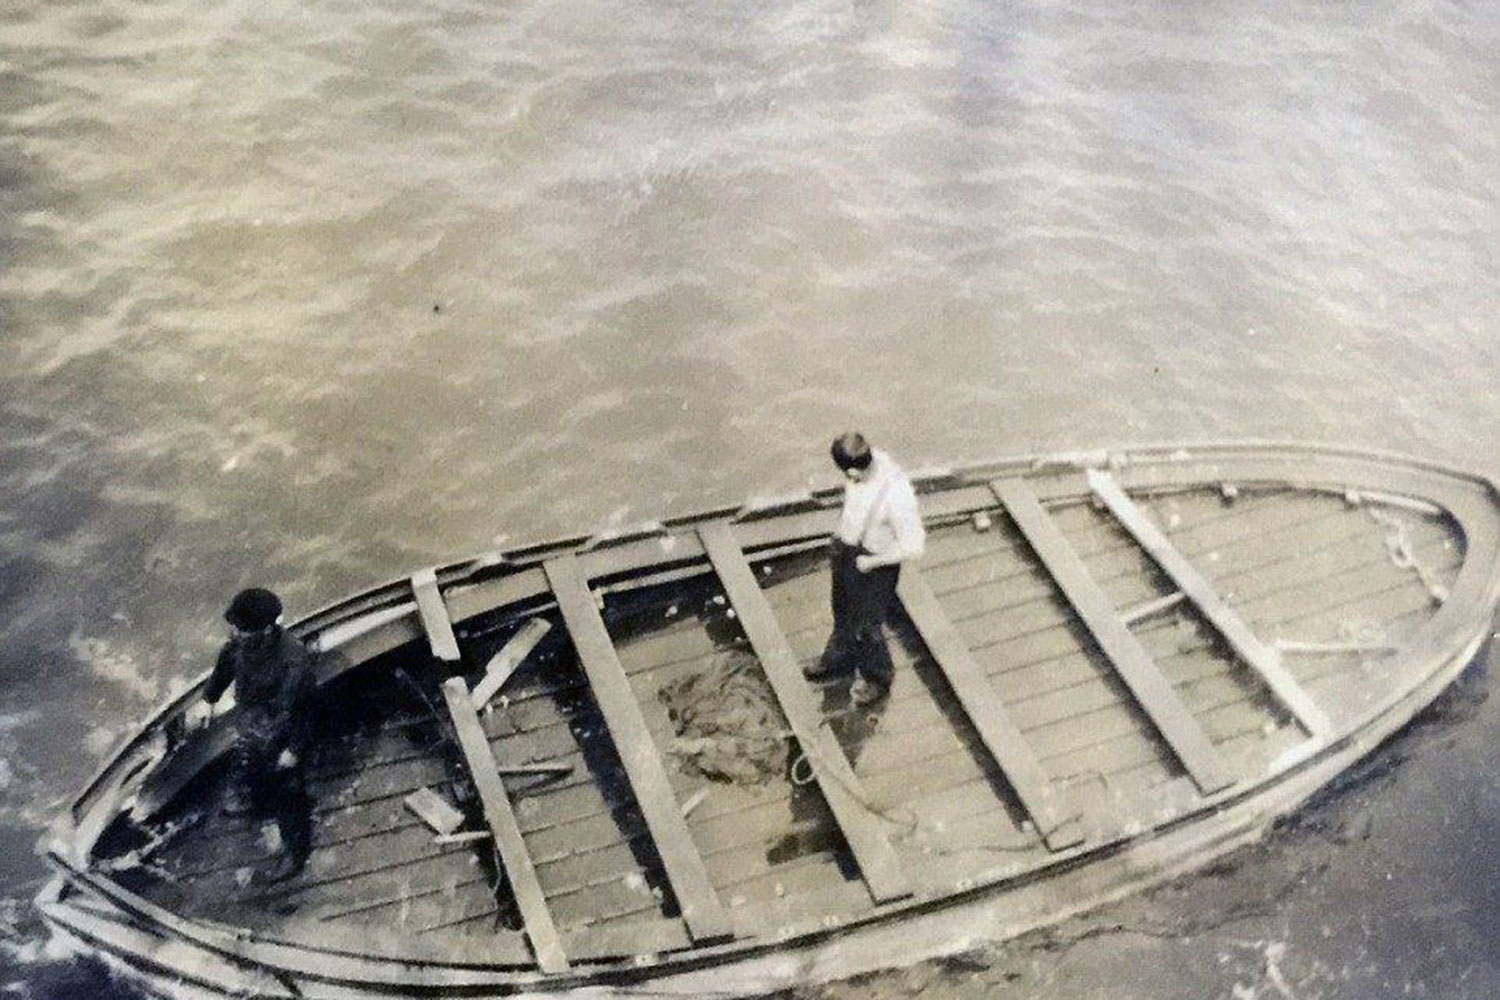 Sorprendente hallazgo en el último bote salvavidas del Titanic